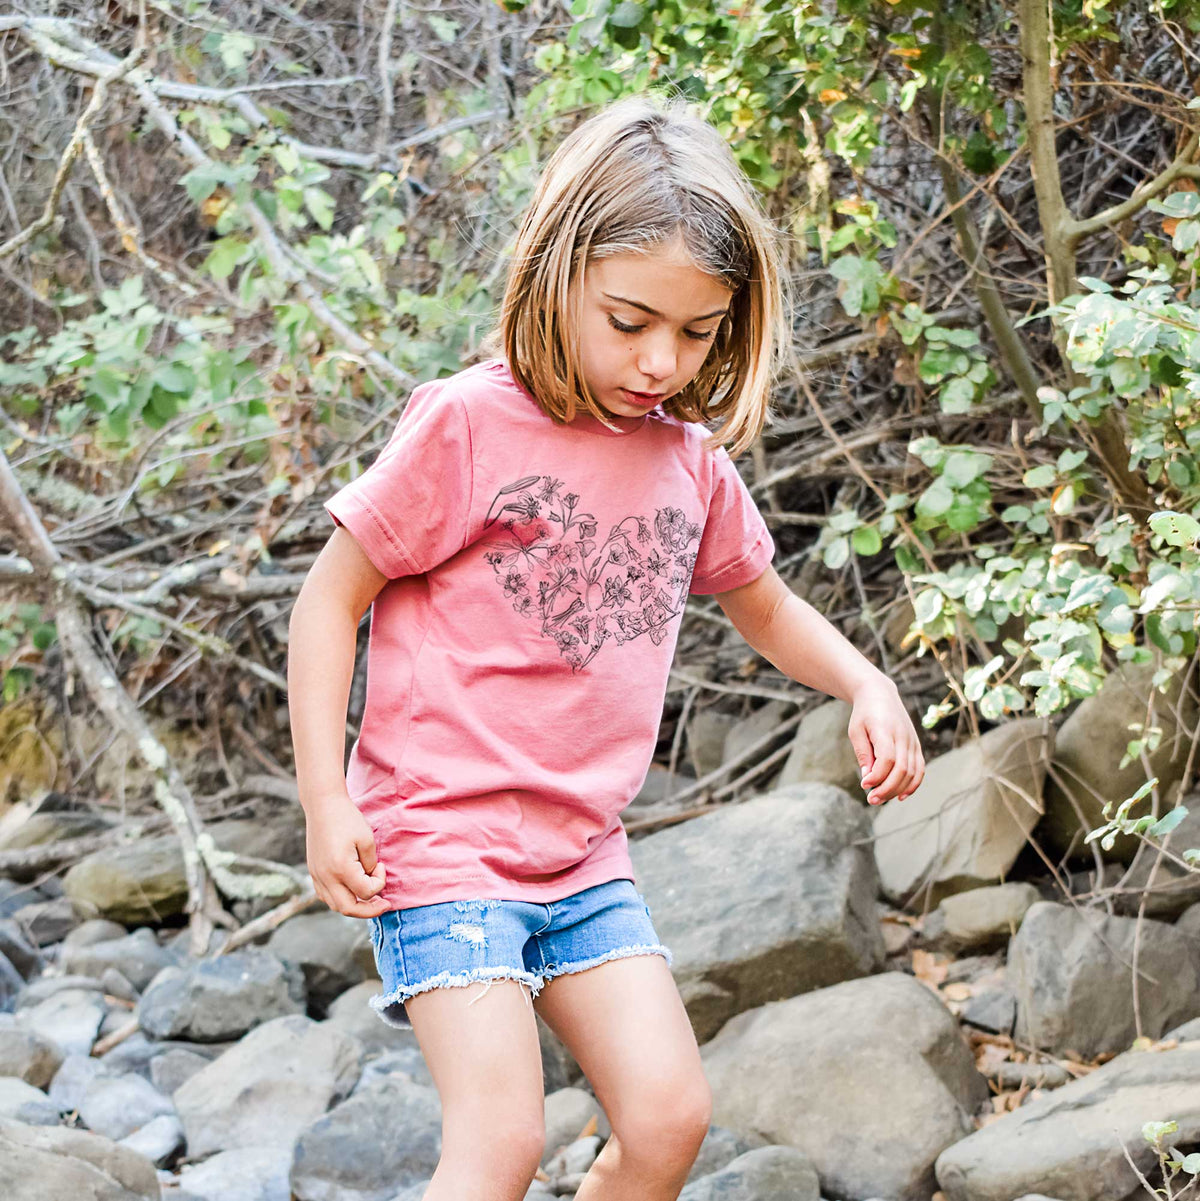 Heart Full of California Mountain Wildflowers - Kids Shirt